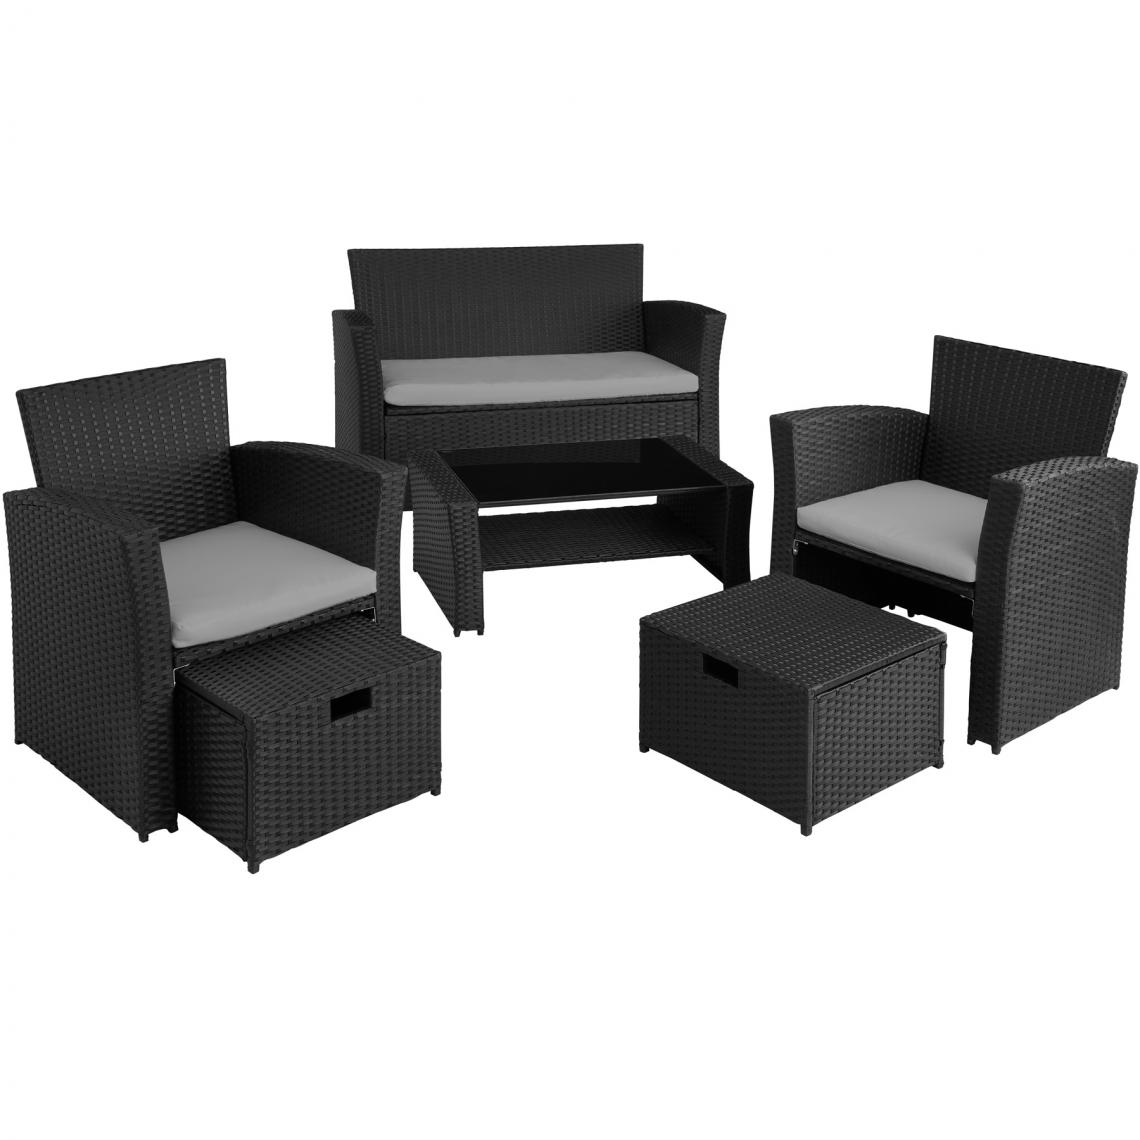 Tectake - Salon de jardin MODENE 4 places avec housse de protection - noir/gris - Ensembles canapés et fauteuils